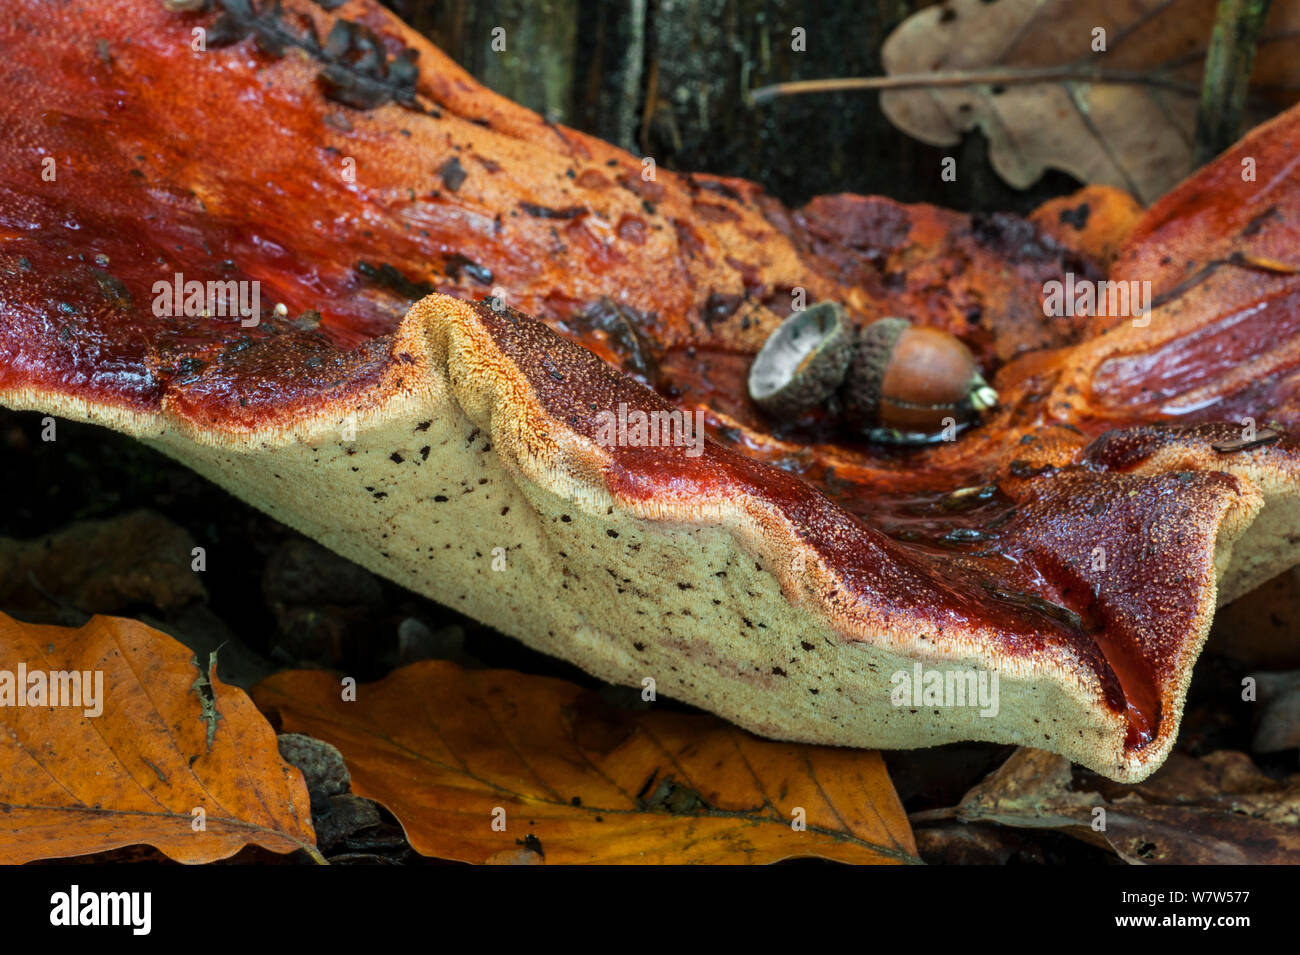 Close up of a Beefsteak fungus (Fistulina hepatica), showing underside, Belgium, October. Stock Photo